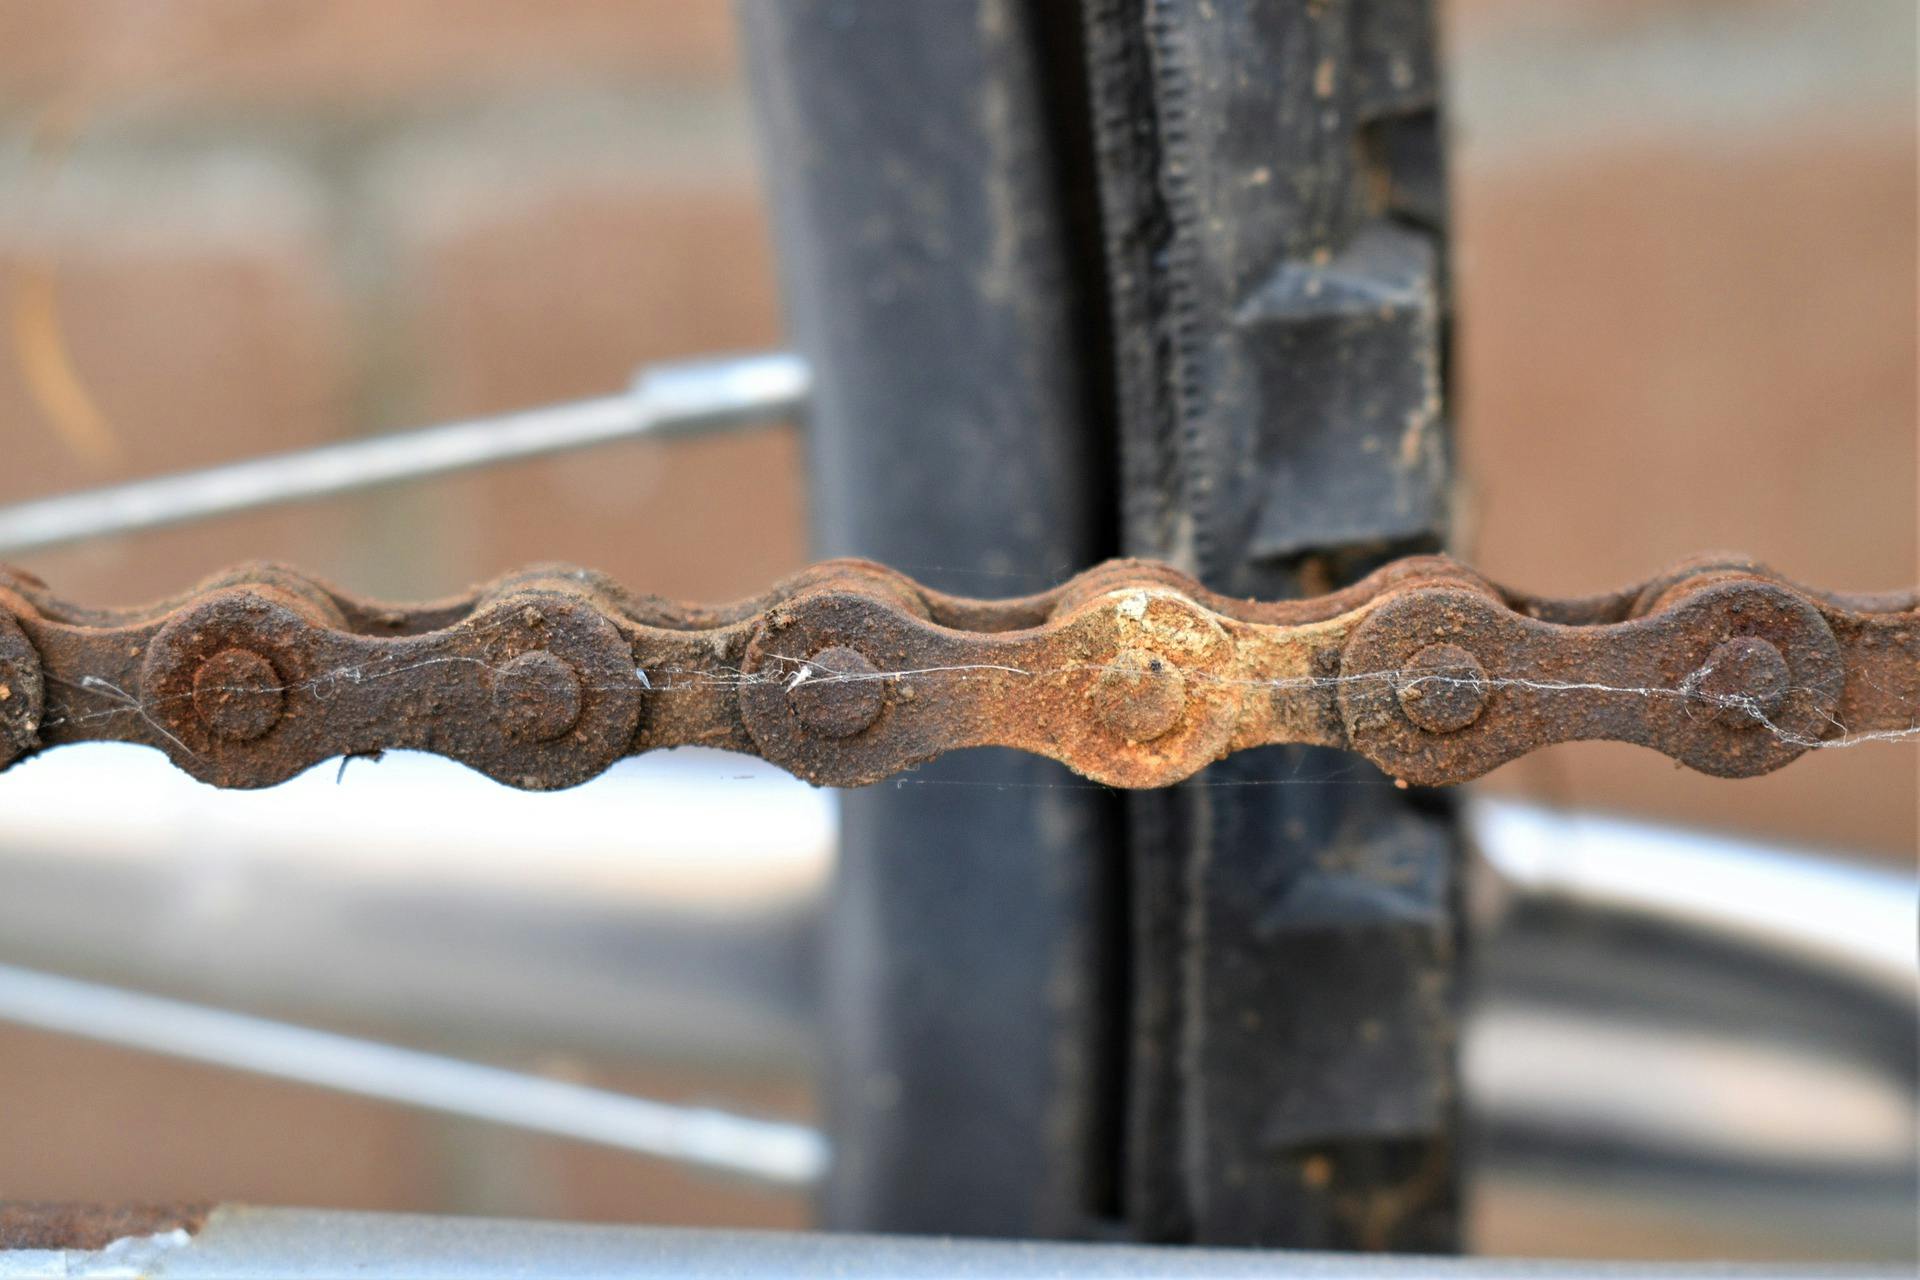 A rusty bike chain.